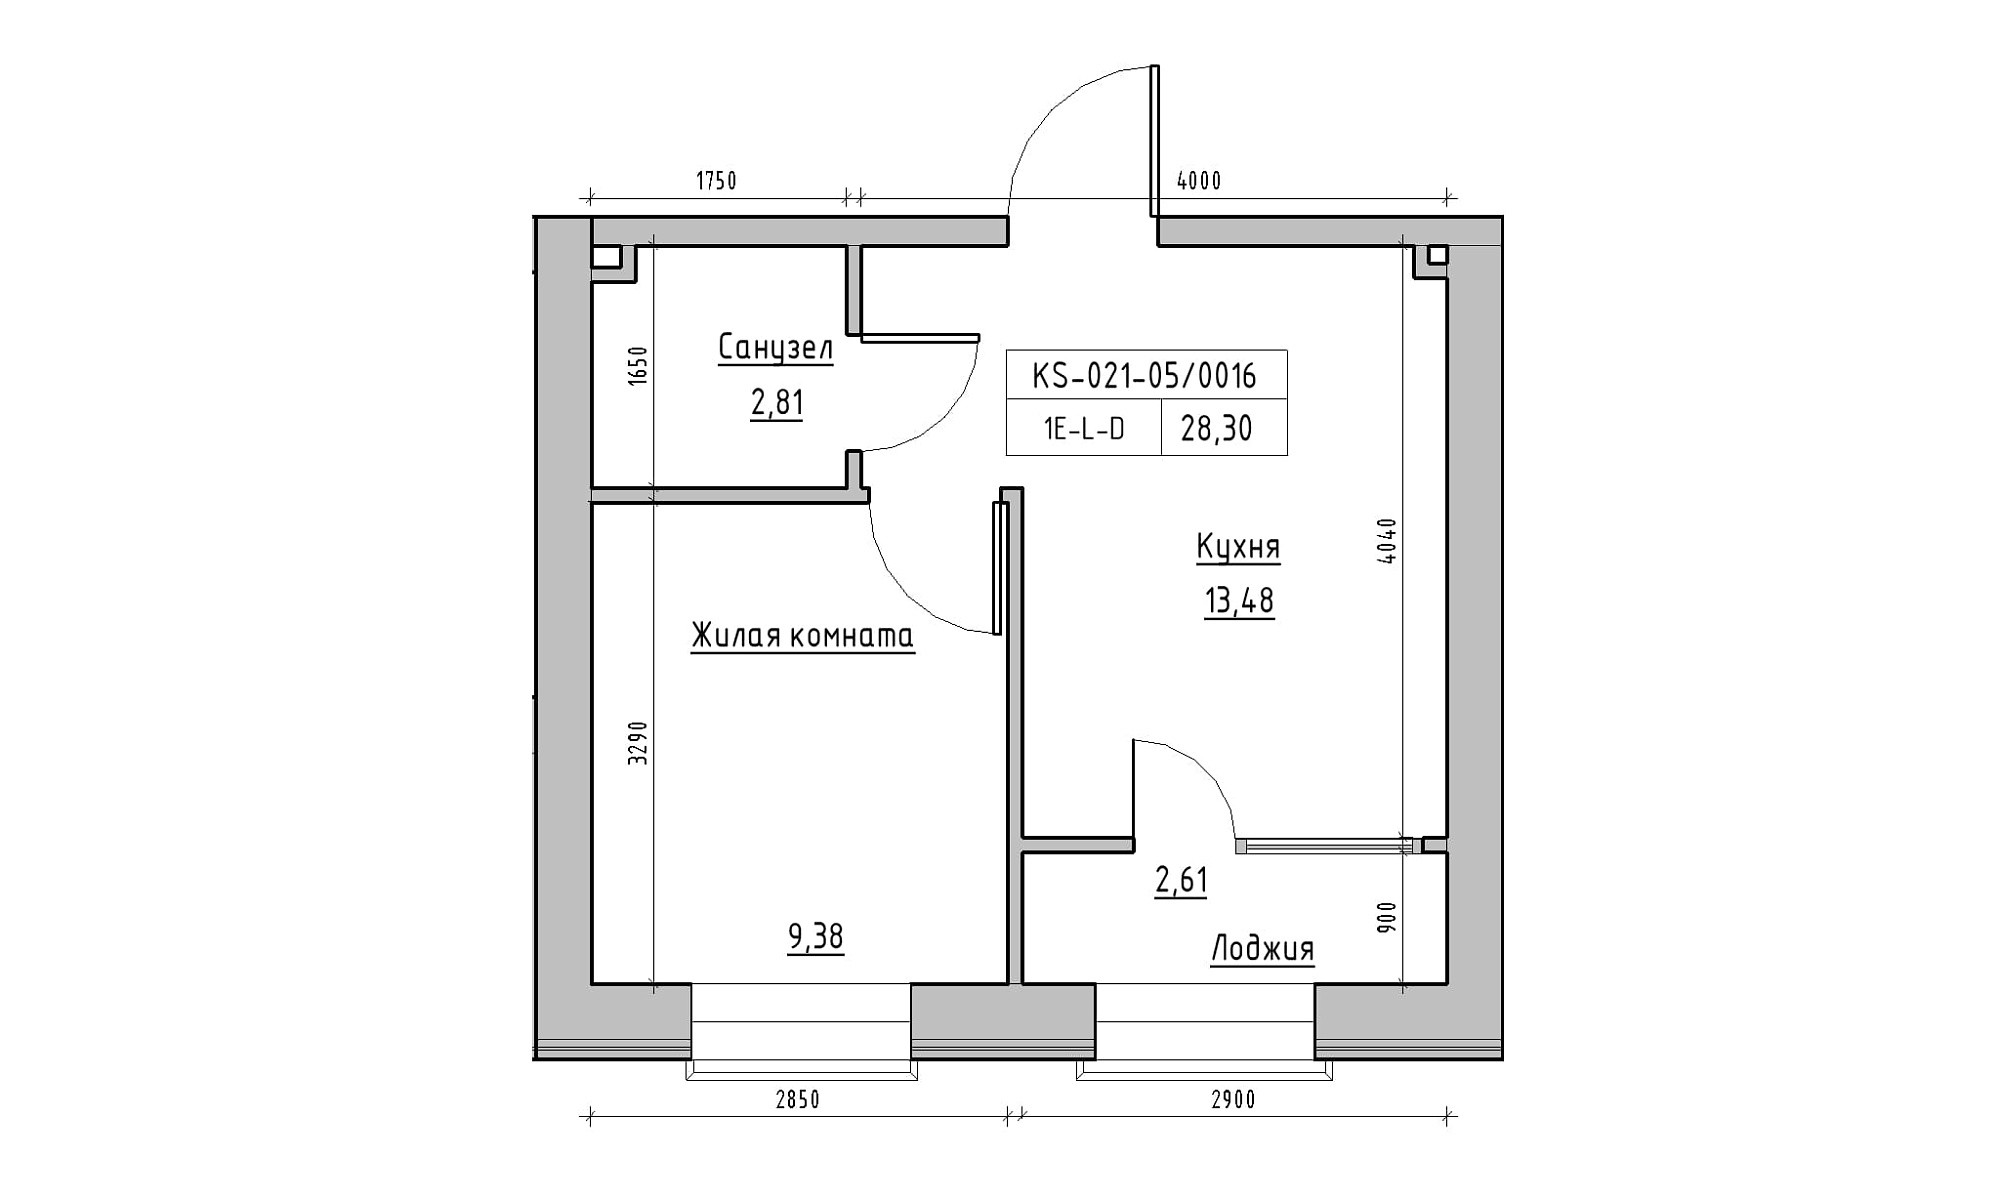 Планування 1-к квартира площею 28.3м2, KS-021-05/0016.